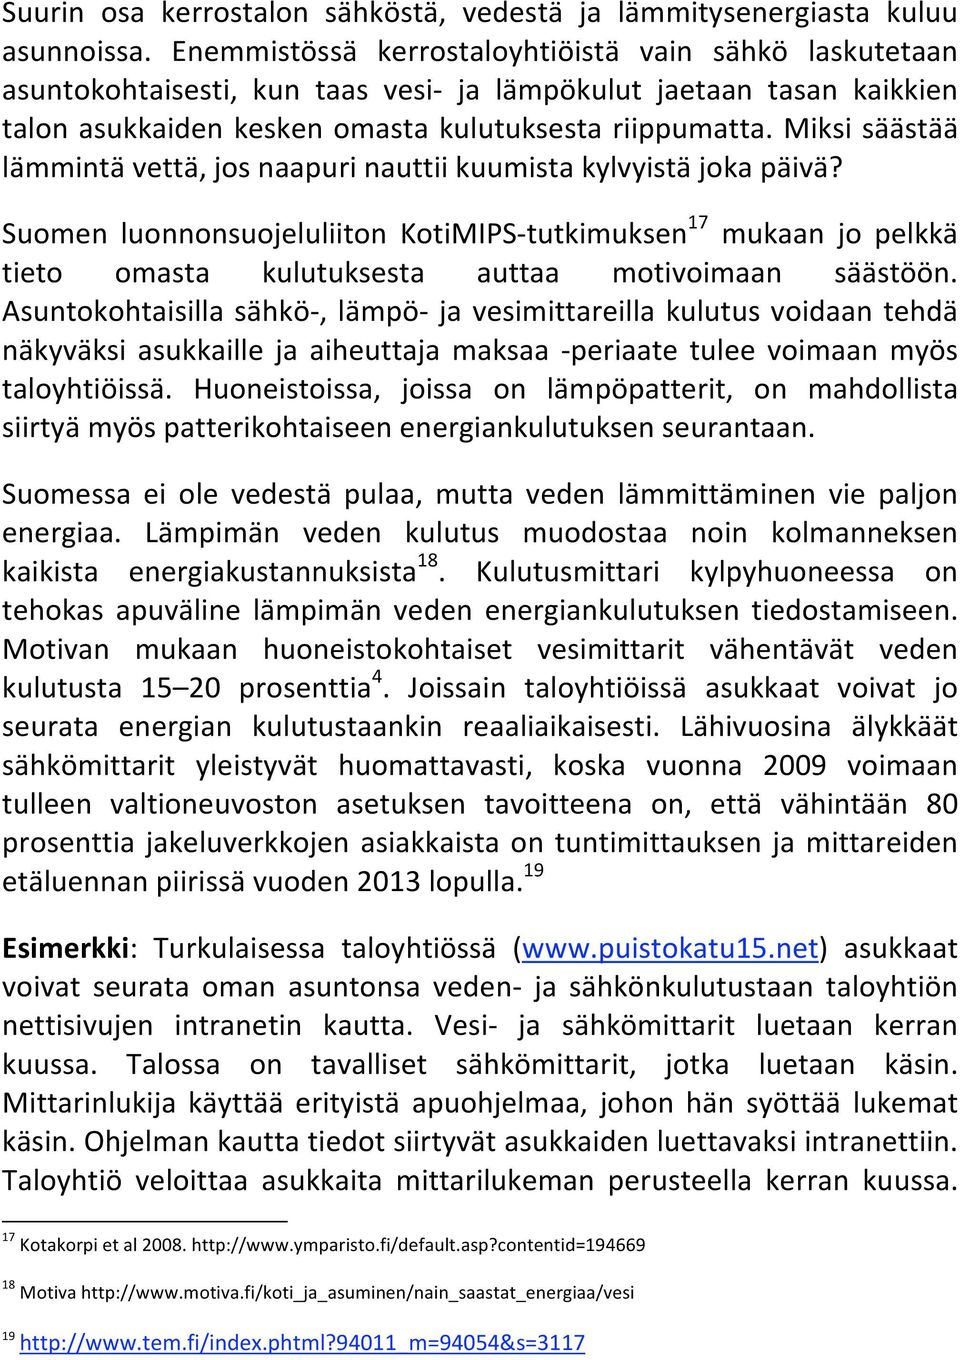 miksisäästää lämmintävettä,josnaapurinauttiikuumistakylvyistäjokapäivä? Suomen luonnonsuojeluliiton KotiMIPS tutkimuksen 17 mukaan jo pelkkä tieto omasta kulutuksesta auttaa motivoimaan säästöön.